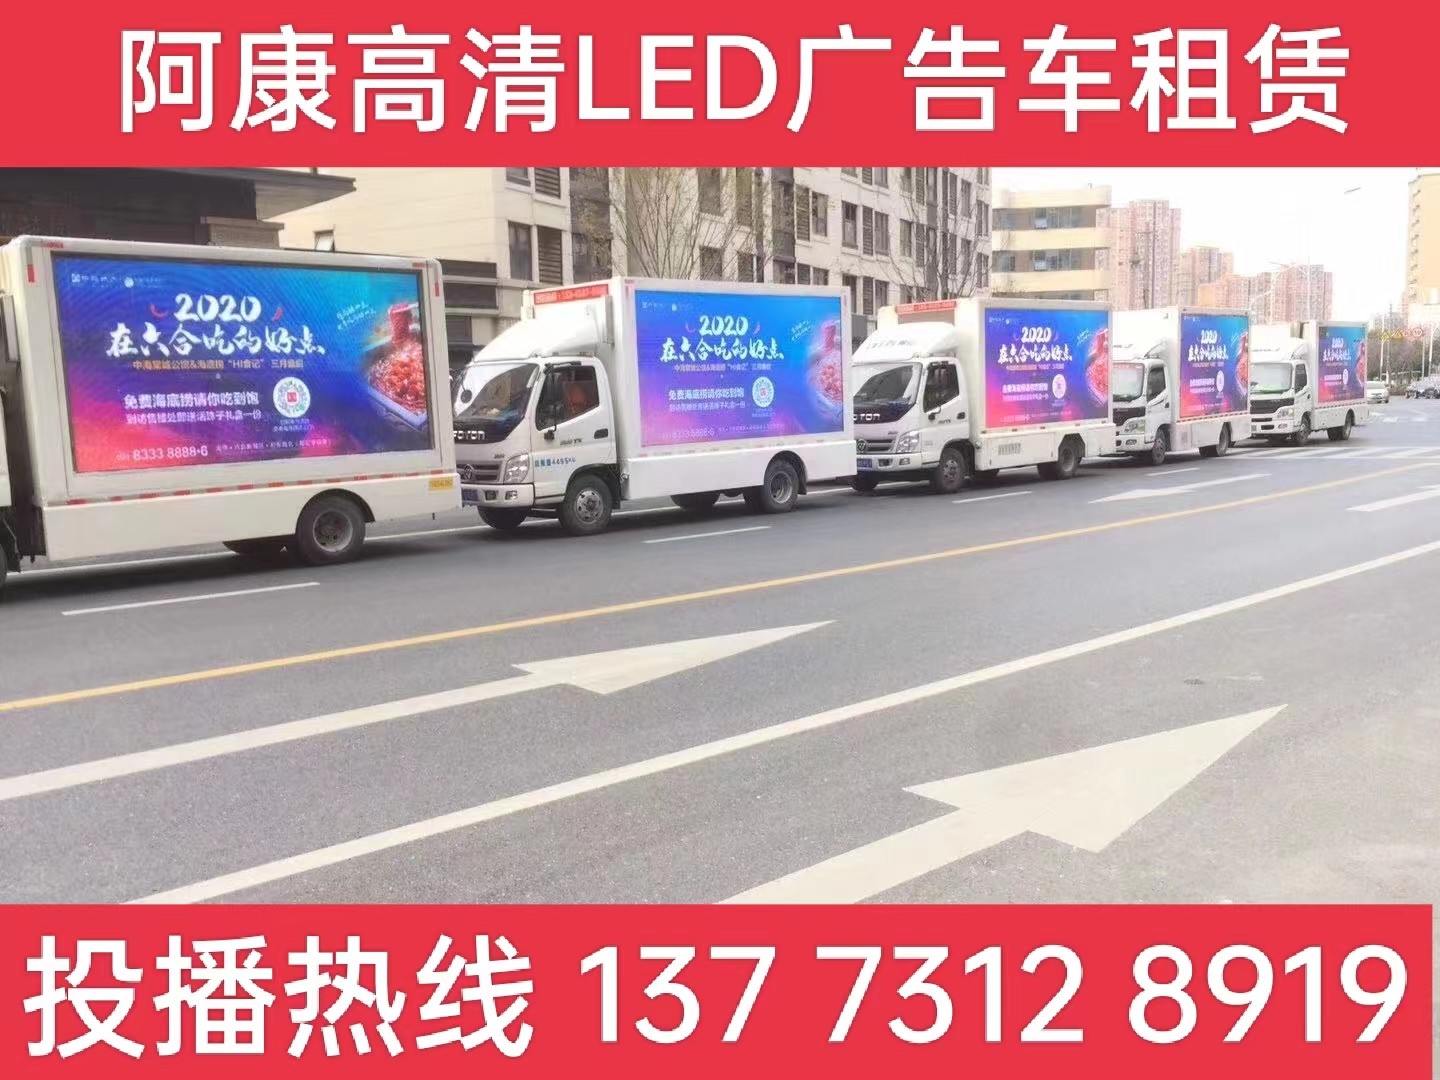 玄武区宣传车出租-海底捞LED广告